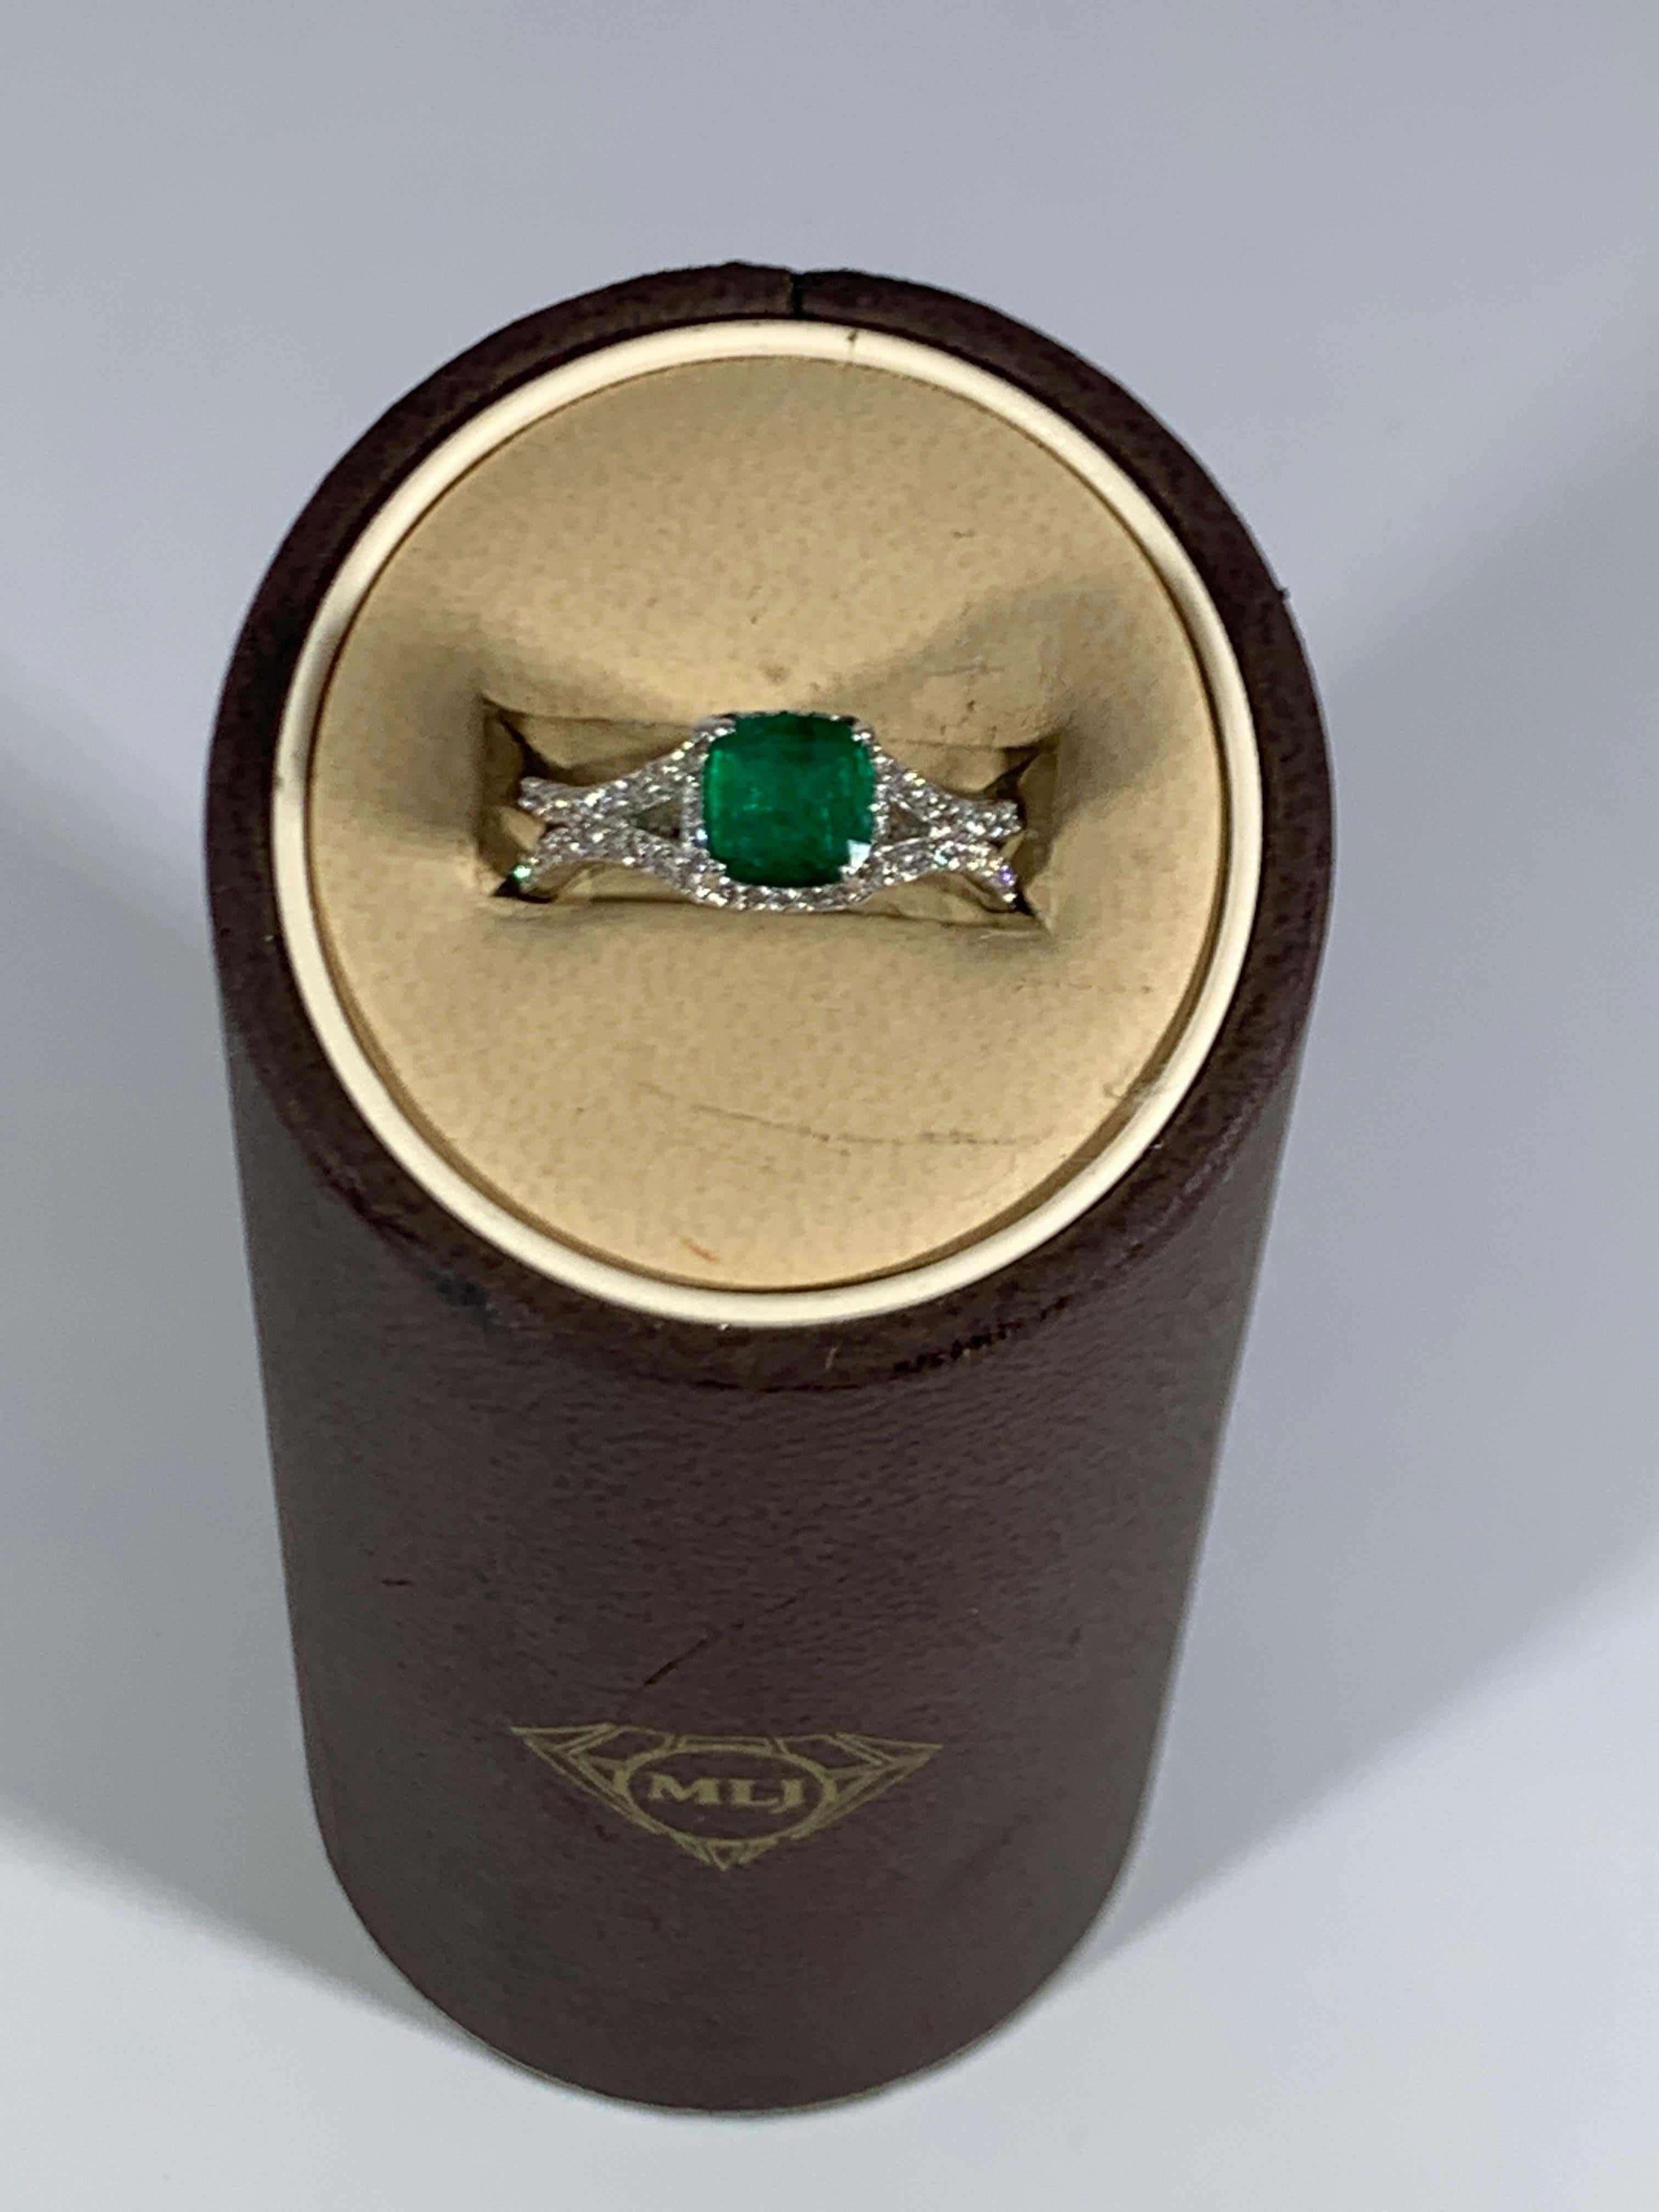 1.2 carat emerald